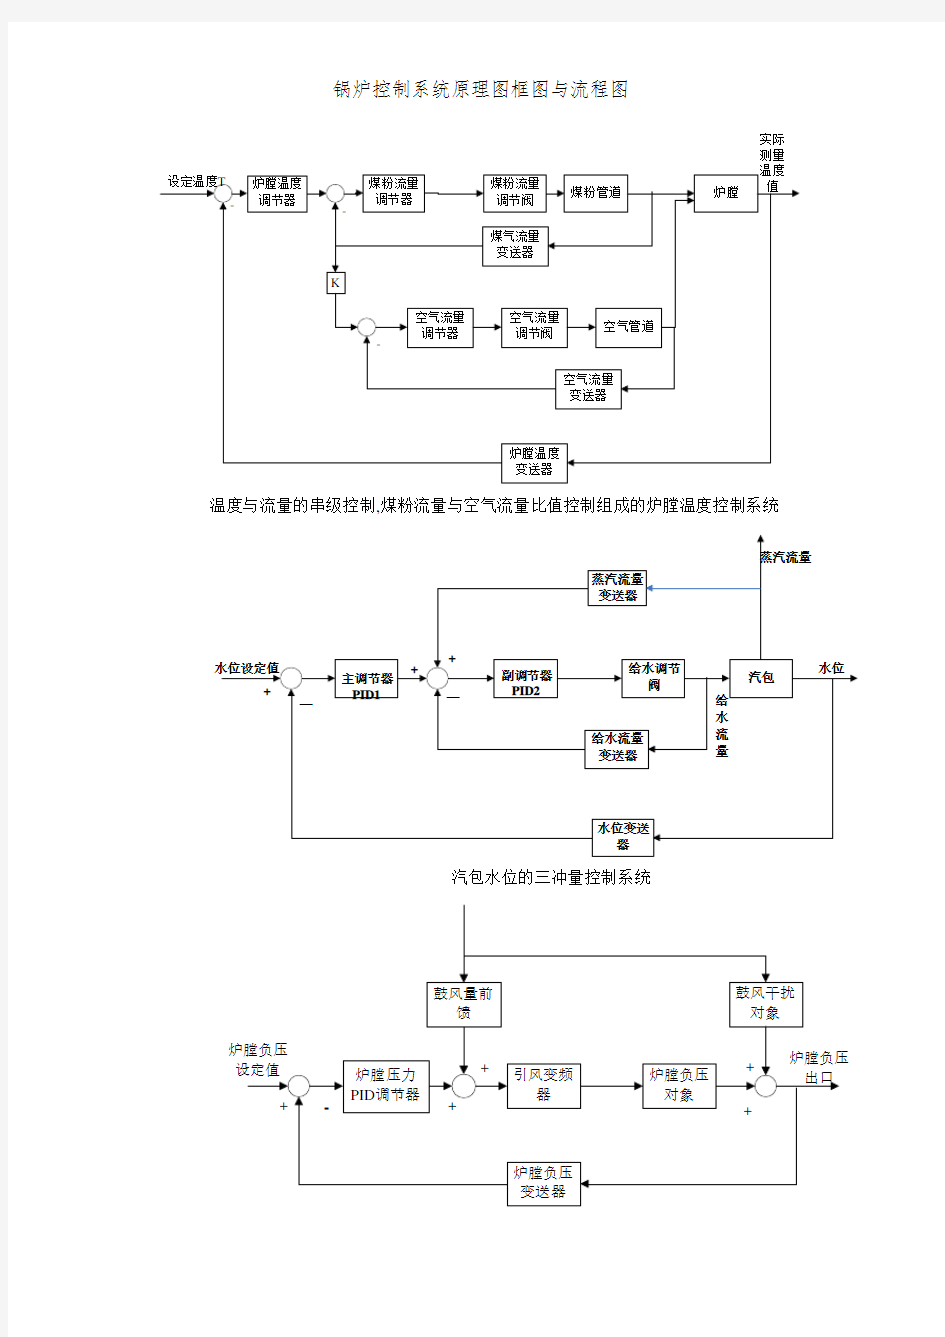 锅炉控制系统原理图框图和流程图